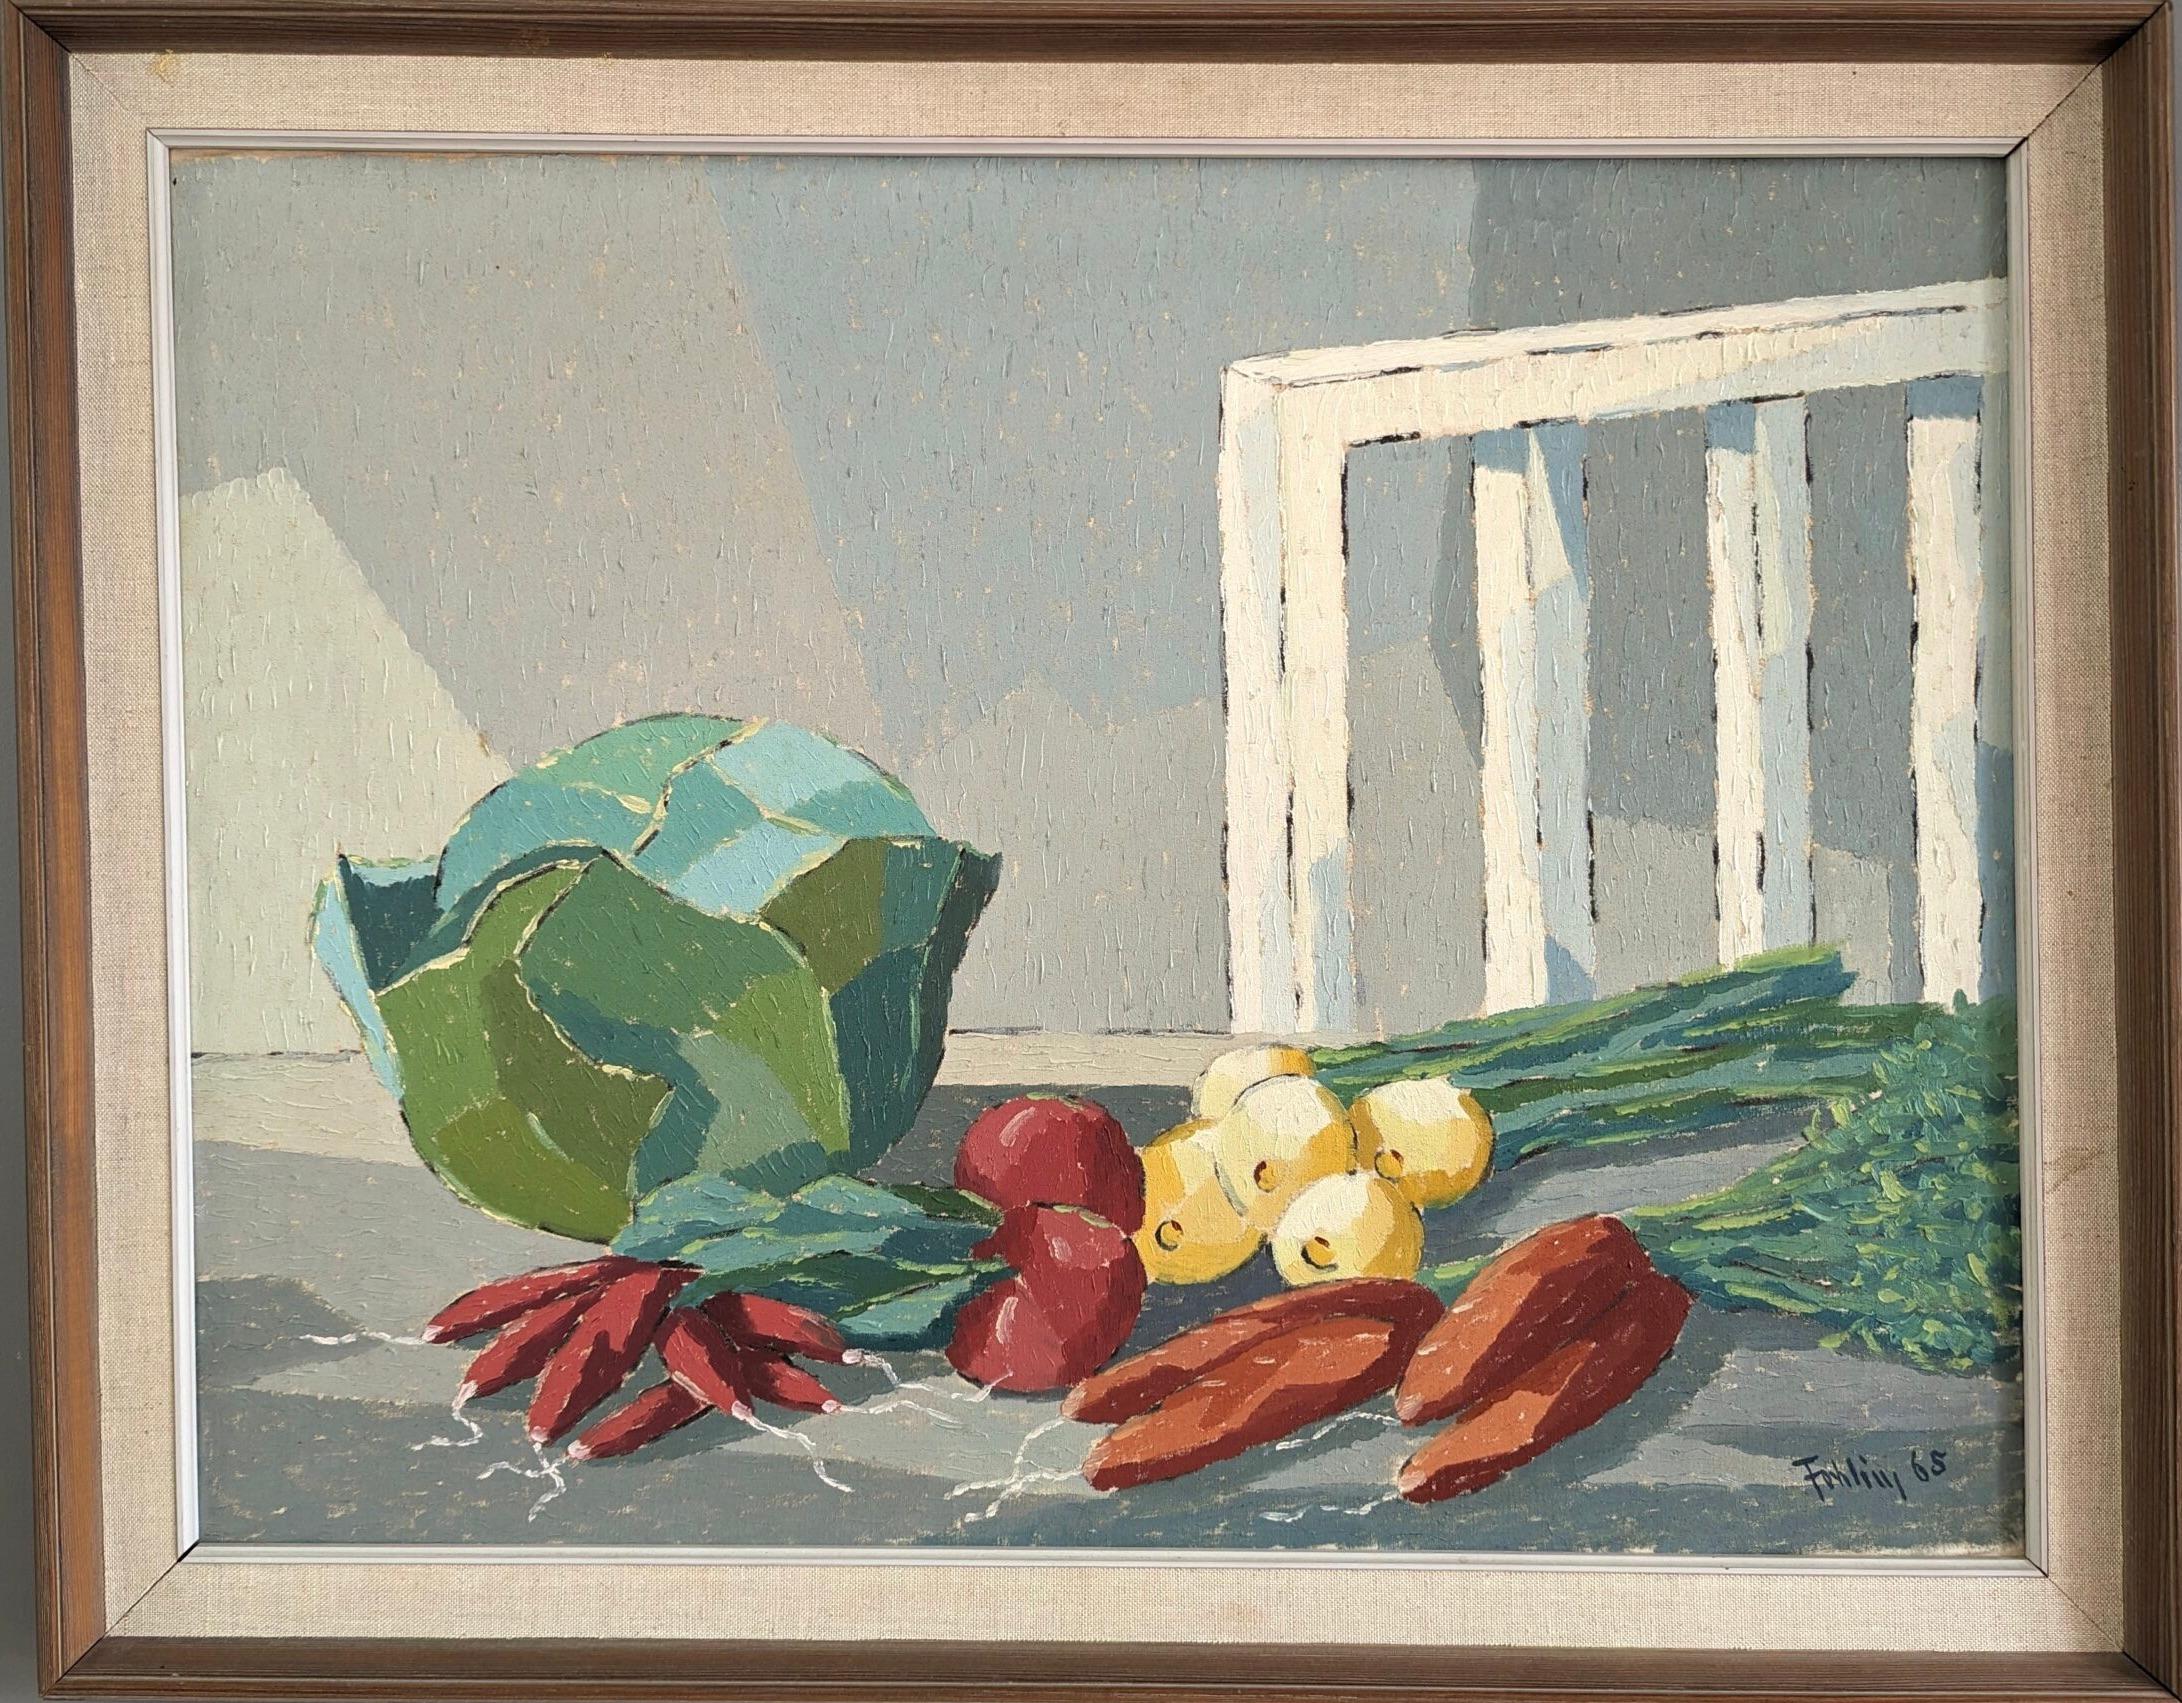 1965 Vintage Mid-Century Modern Swedish Still Life Oil Painting - Vegetables